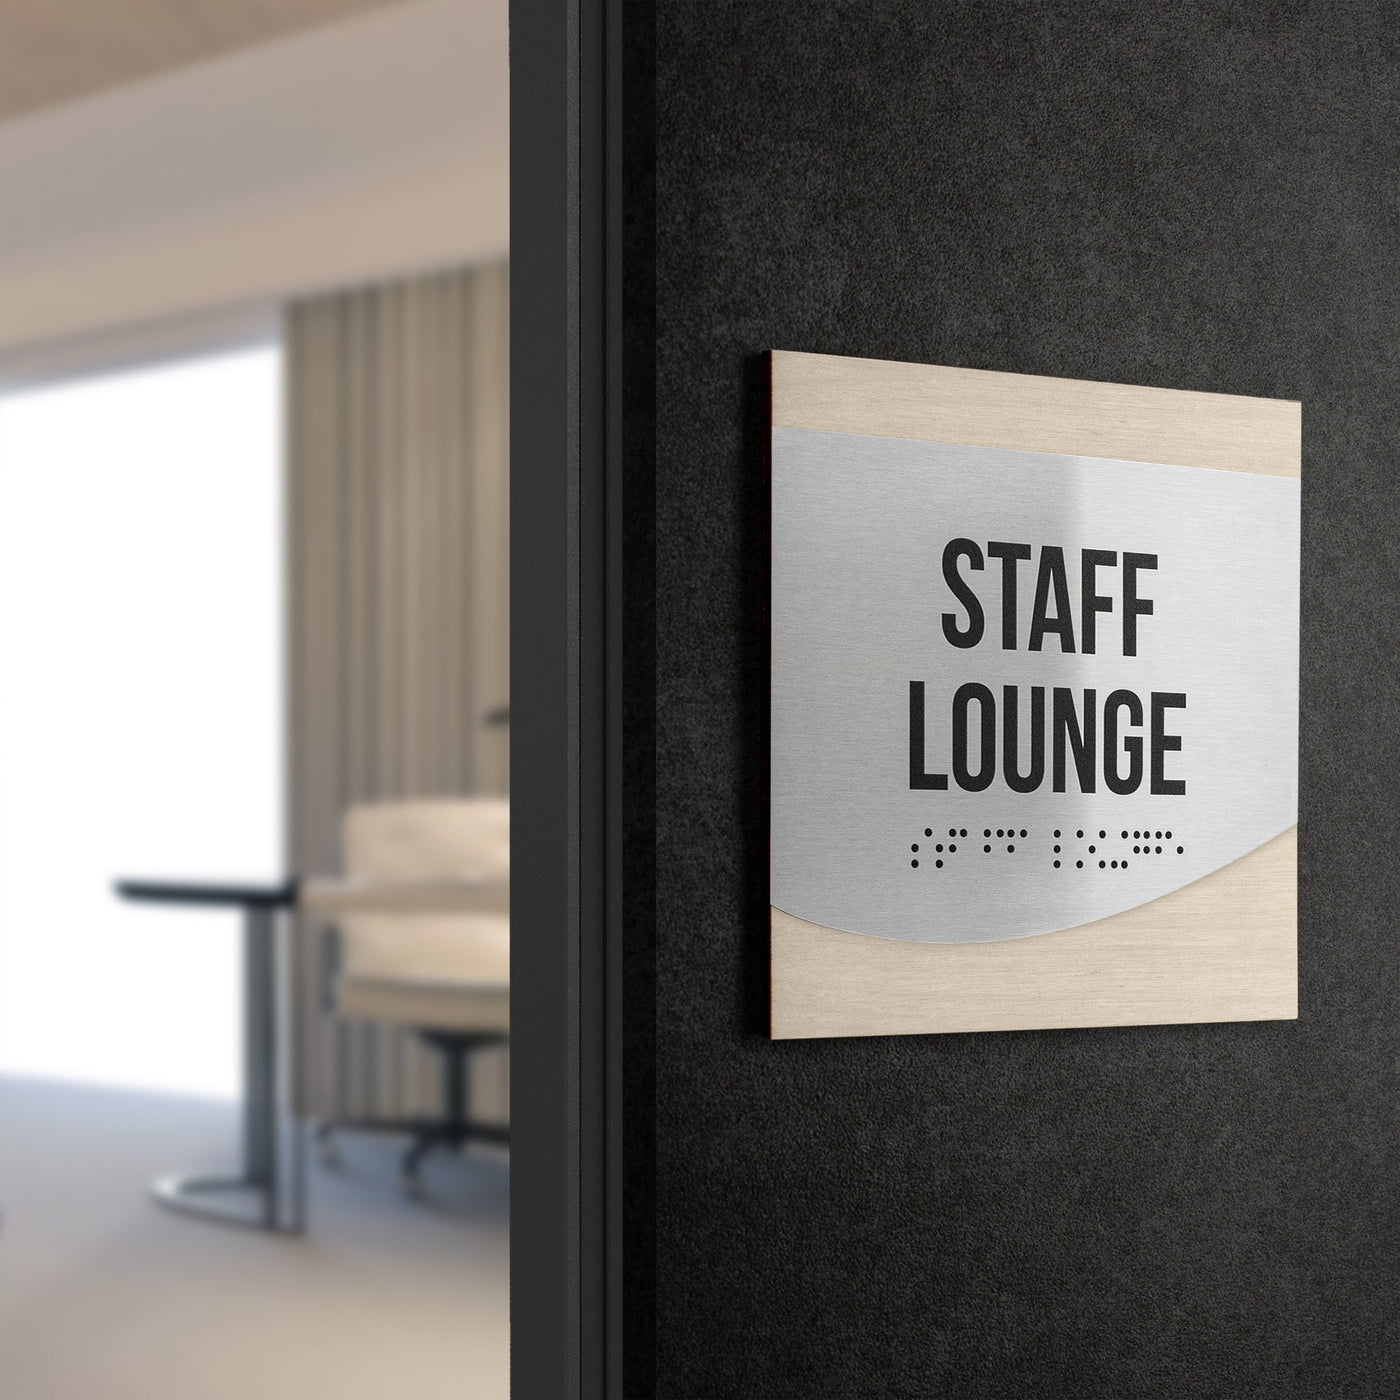 Custom Office Door Sign - Stainless steel & Wood - "Venture" Design